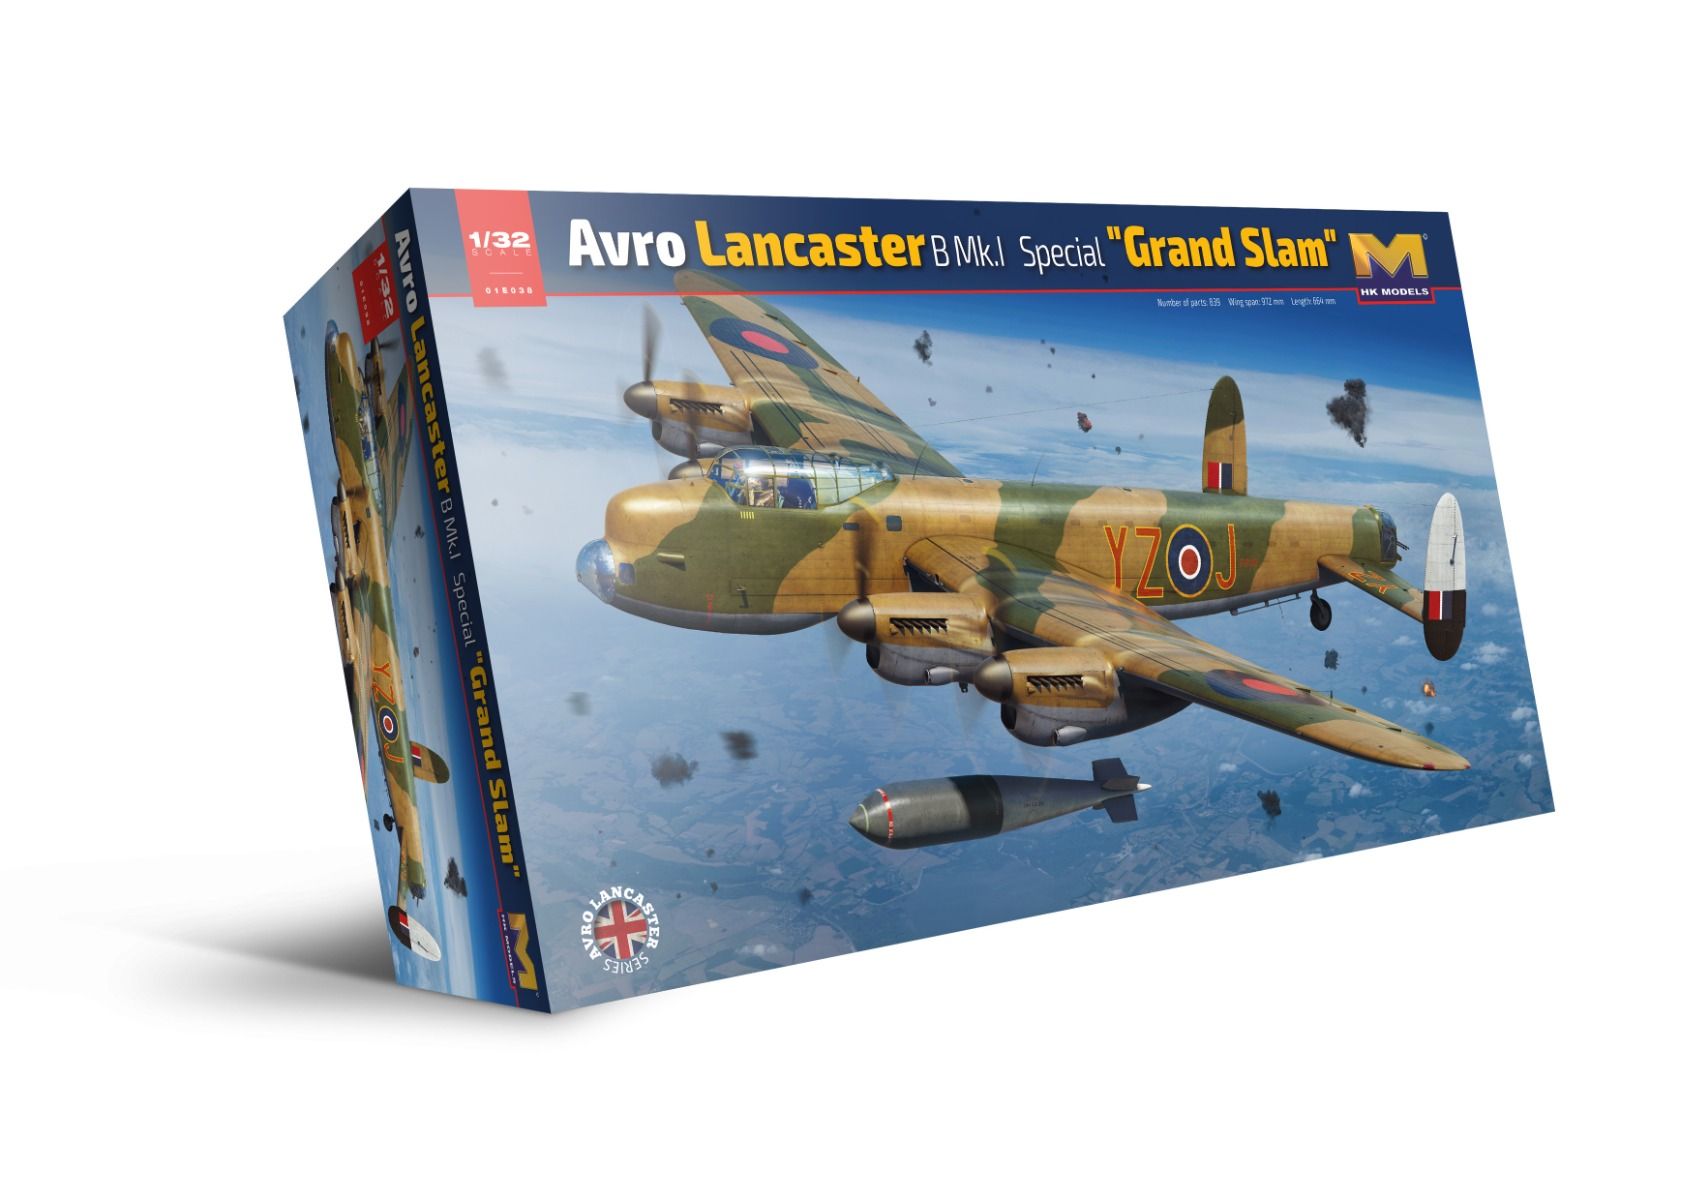  HK Models Avro Lancaster B Mk.1 Grand Slam